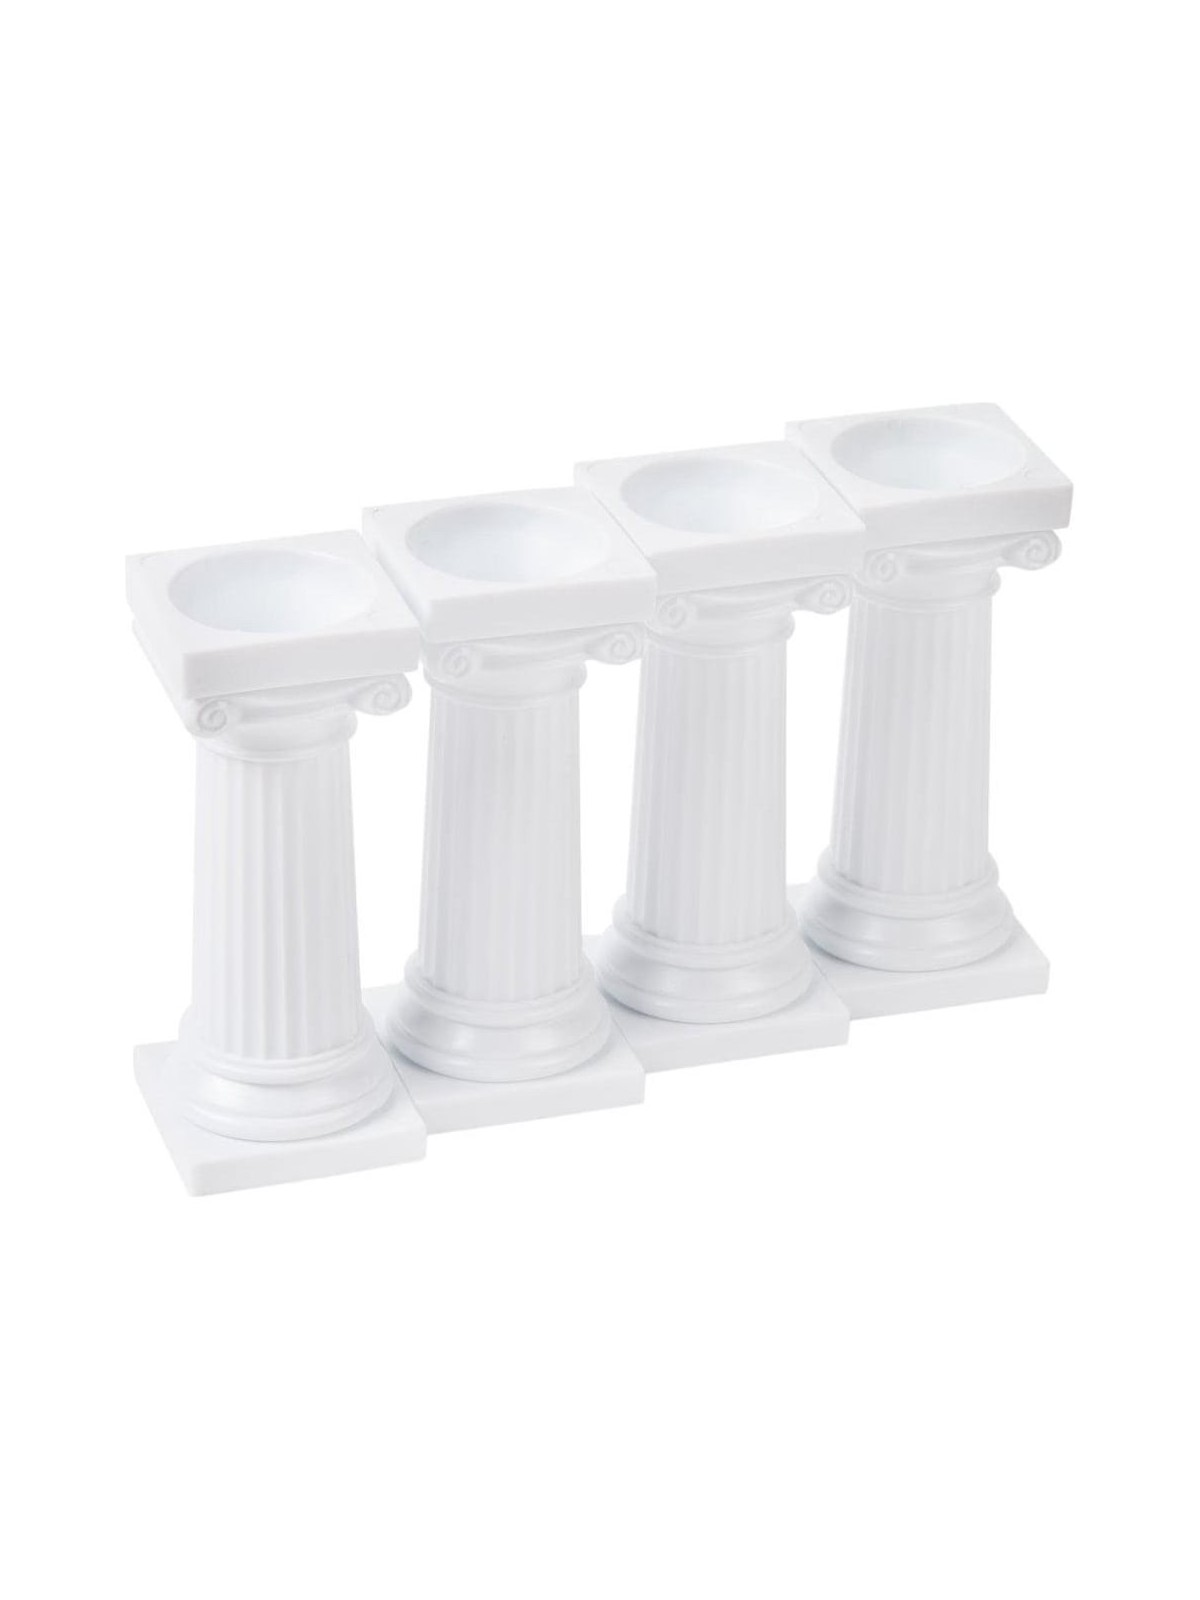 caketools greek columns 4pcs 8cm